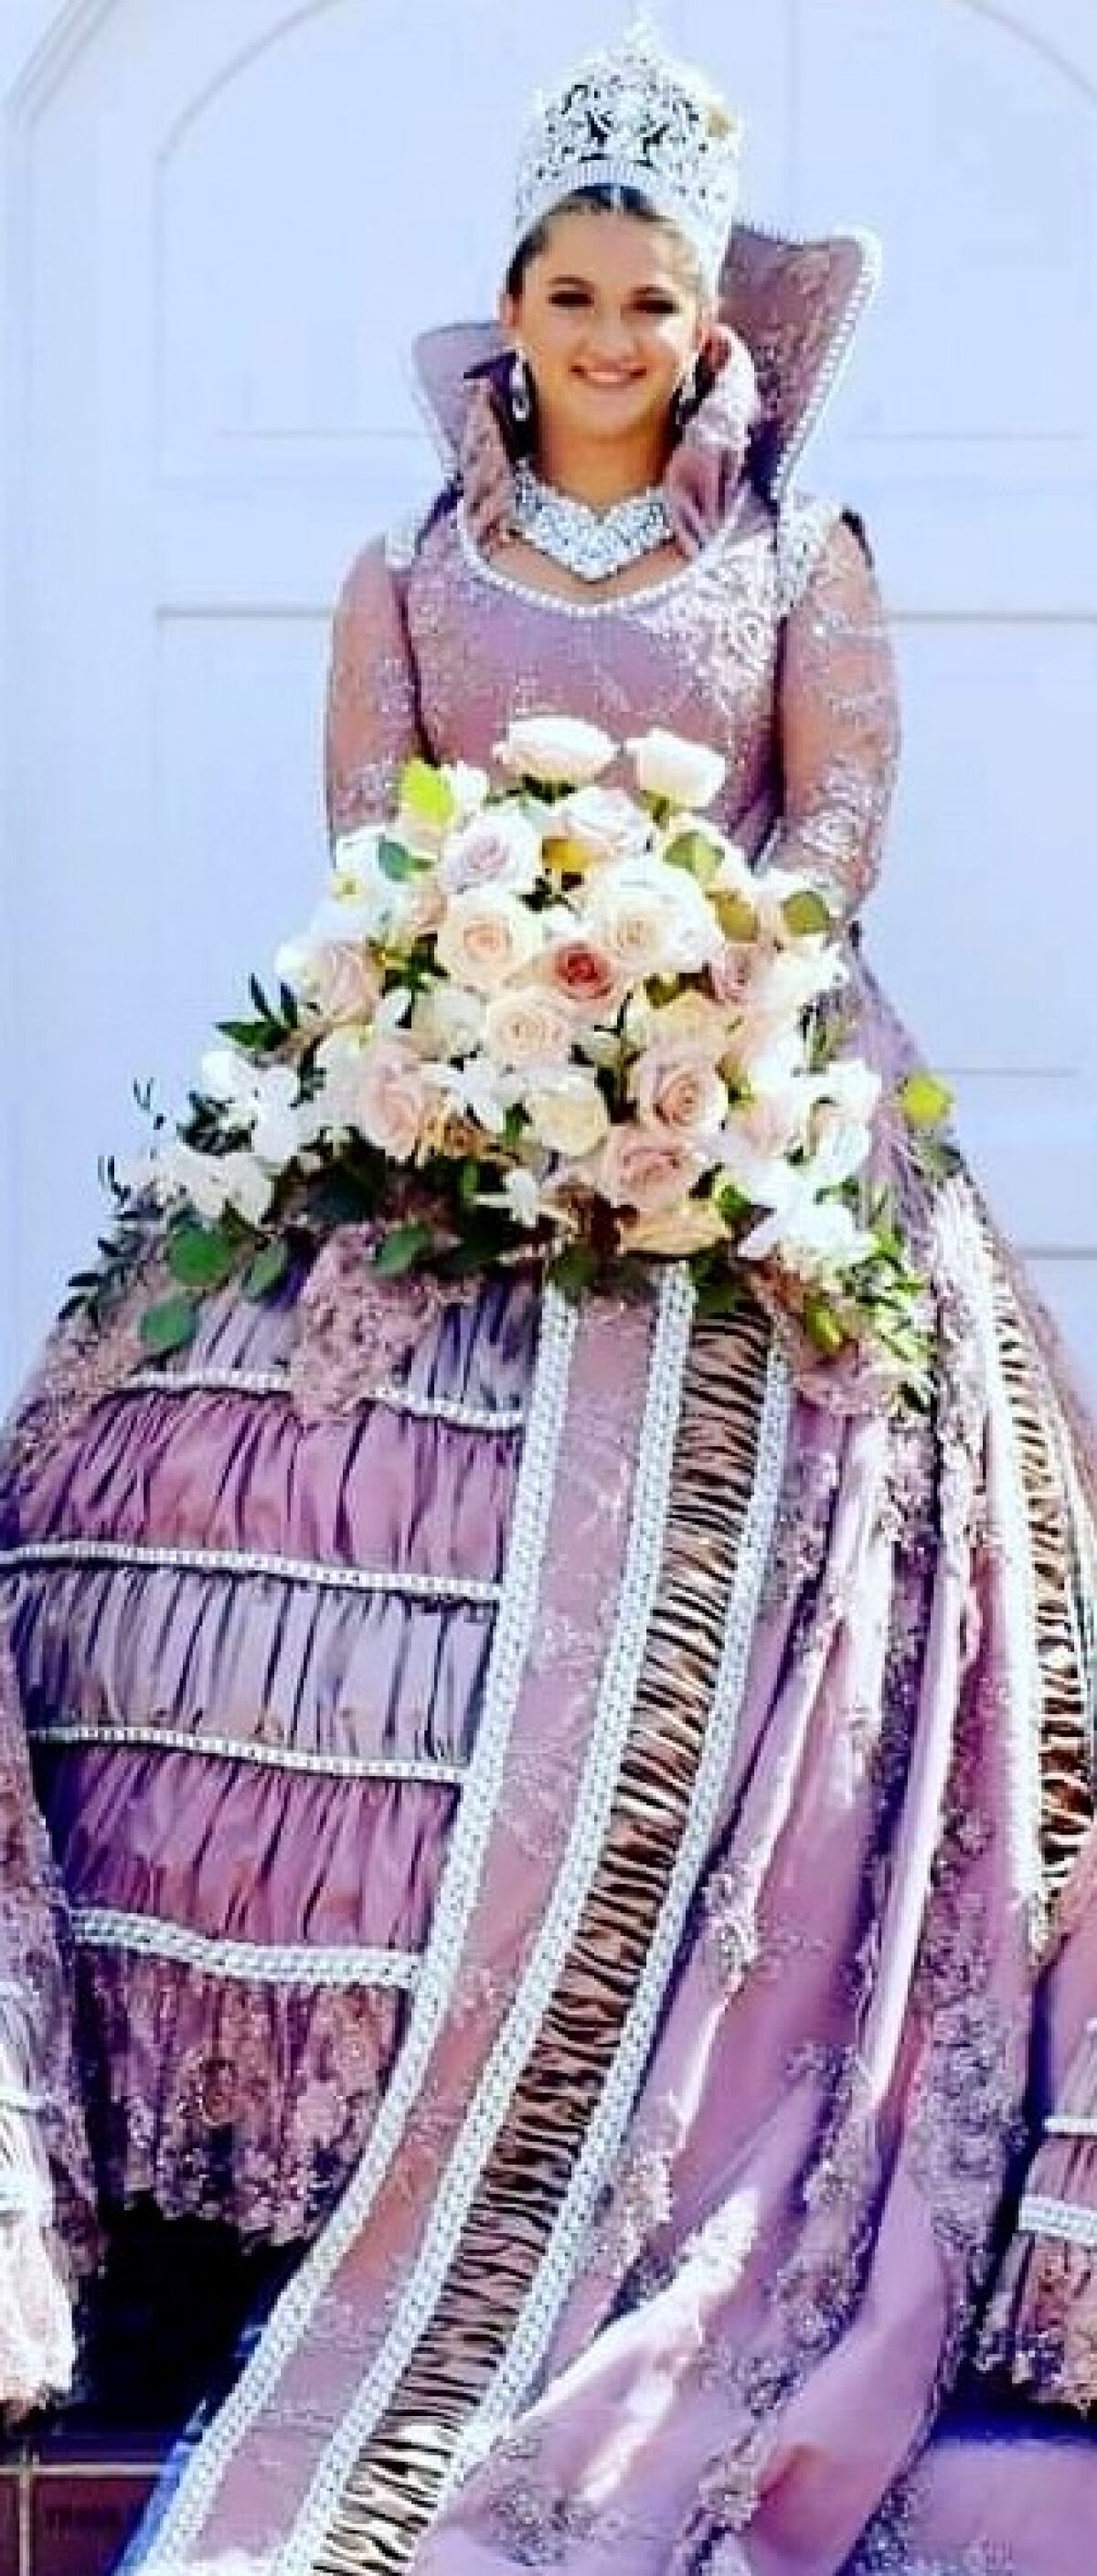 Grace DaSilva was queen of the 2019 Festa.